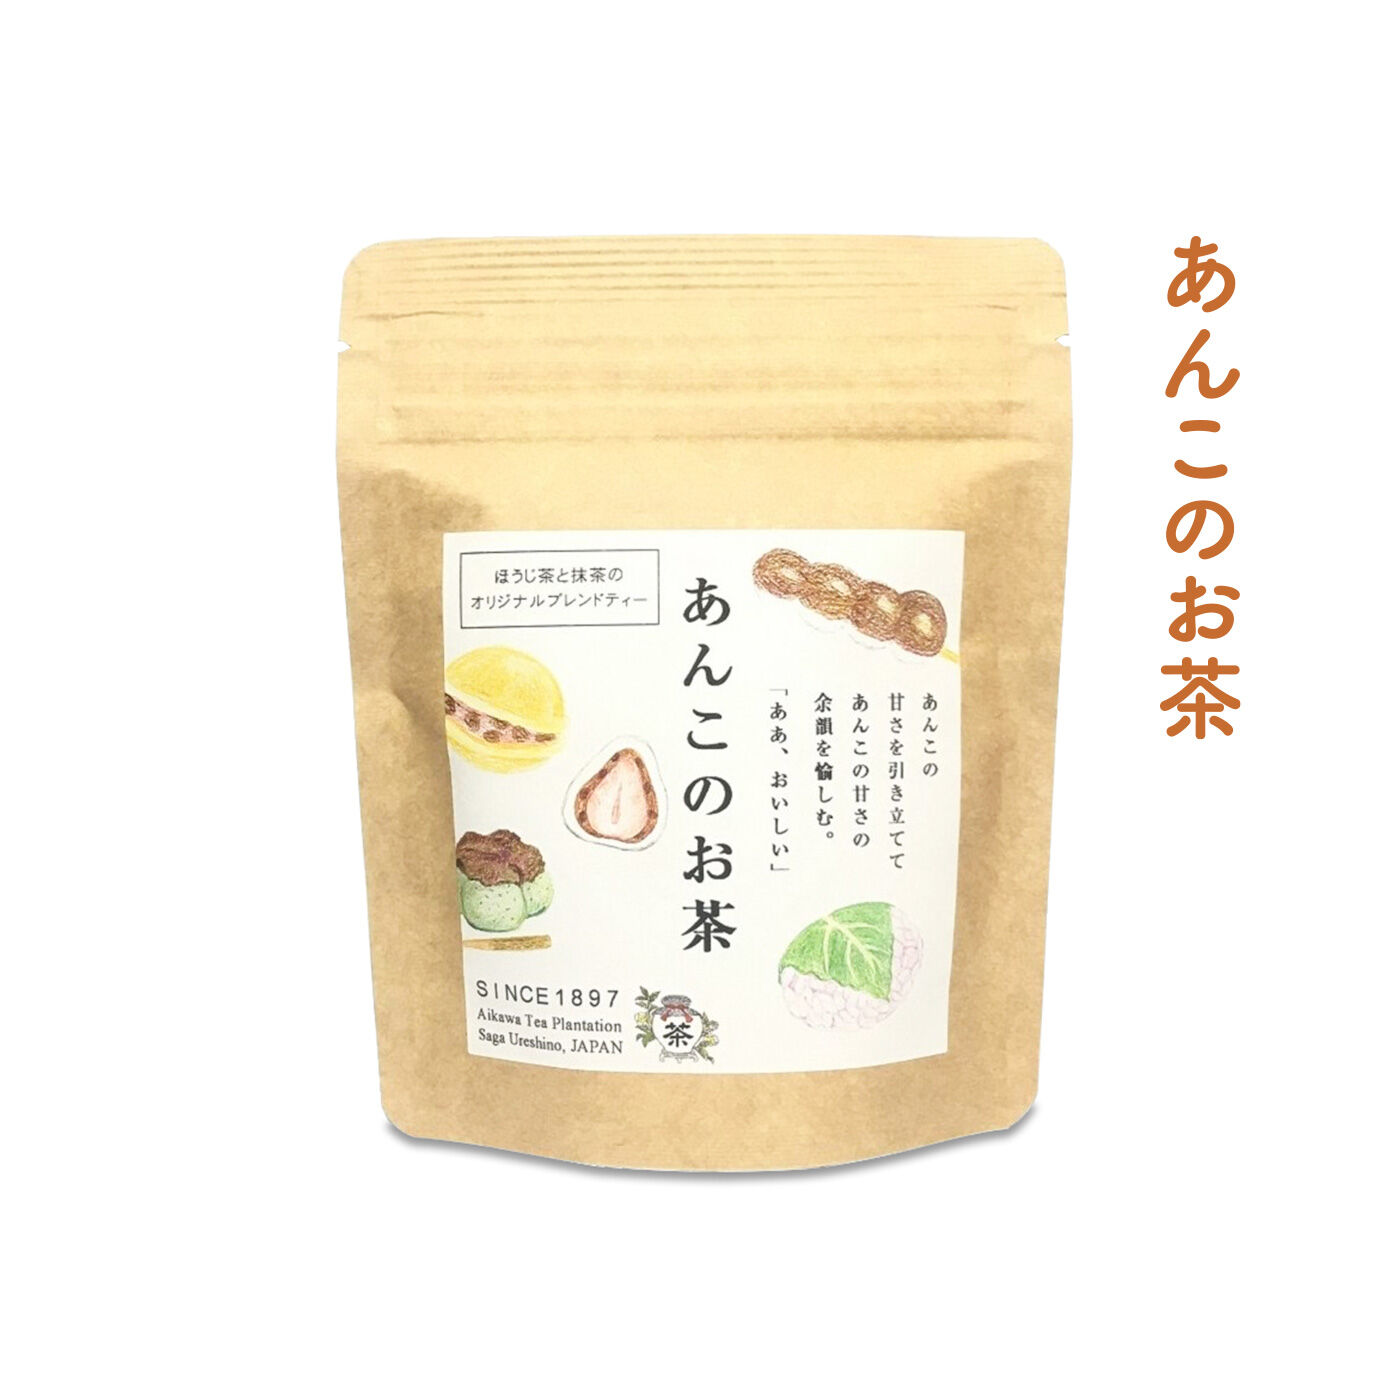 FELISSIMO PARTNERS|佐賀 相川製茶舗 いろんな味わいが楽しい うれしの茶の会（12回予約）|あんこを楽しむための最高の相棒！